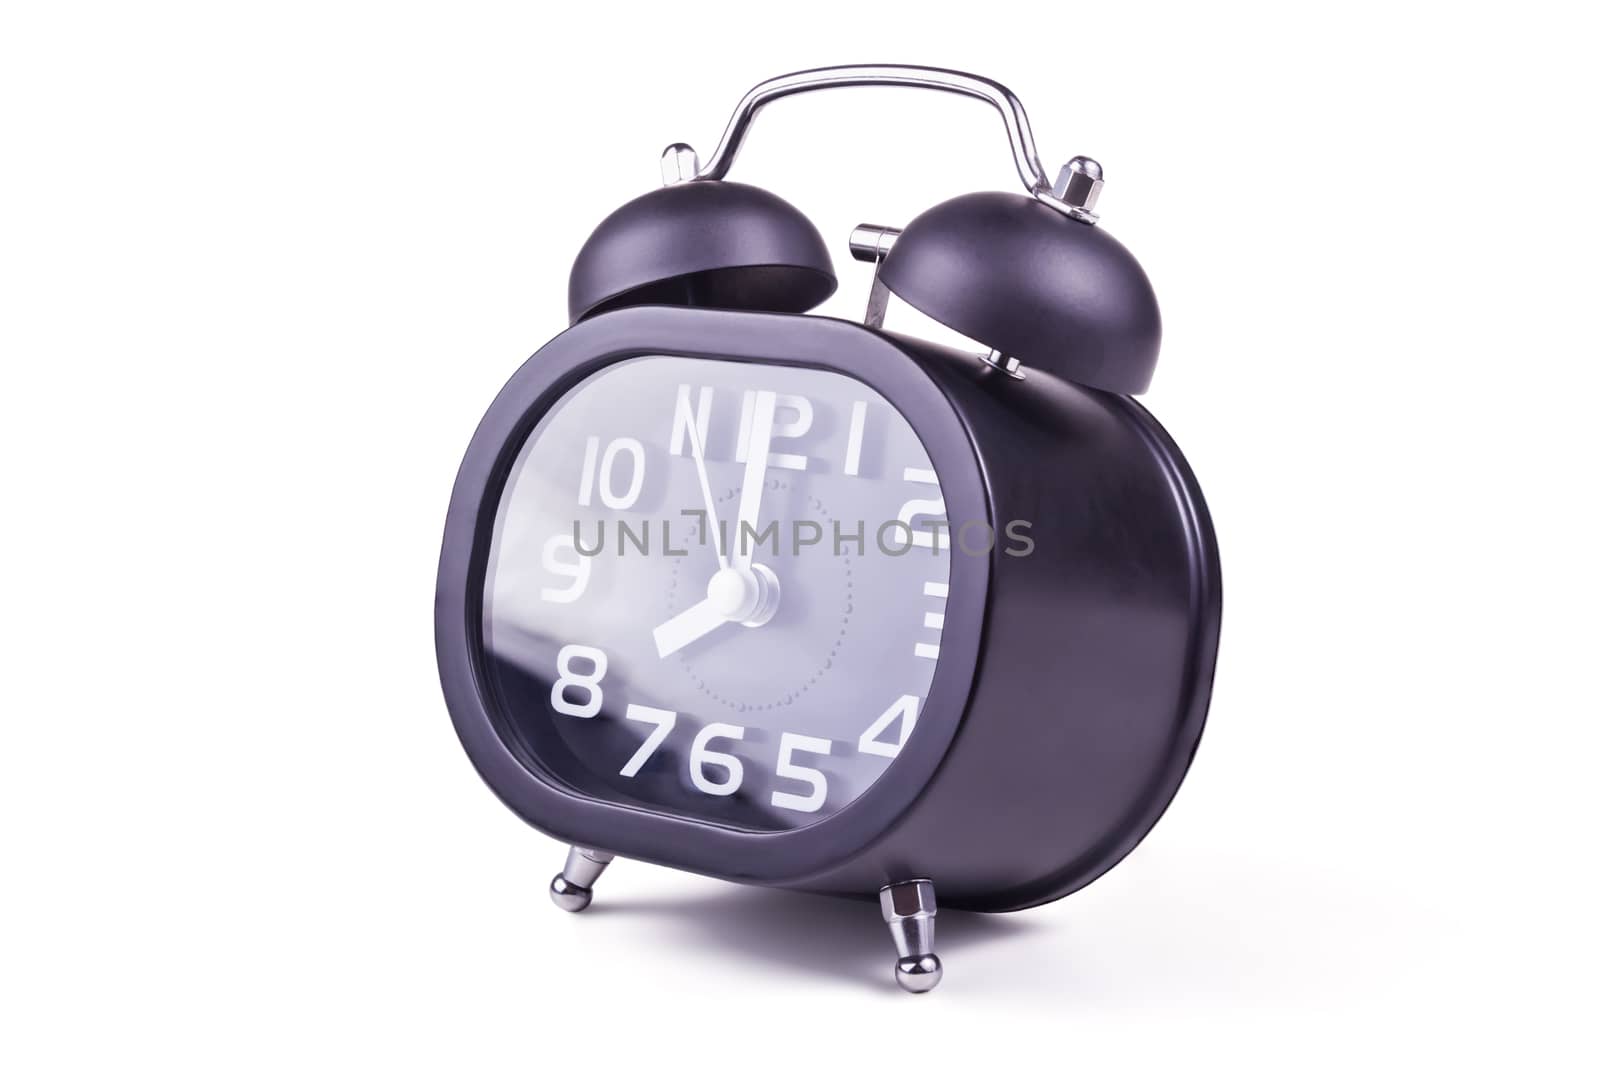 Alarm clock by pilotL39